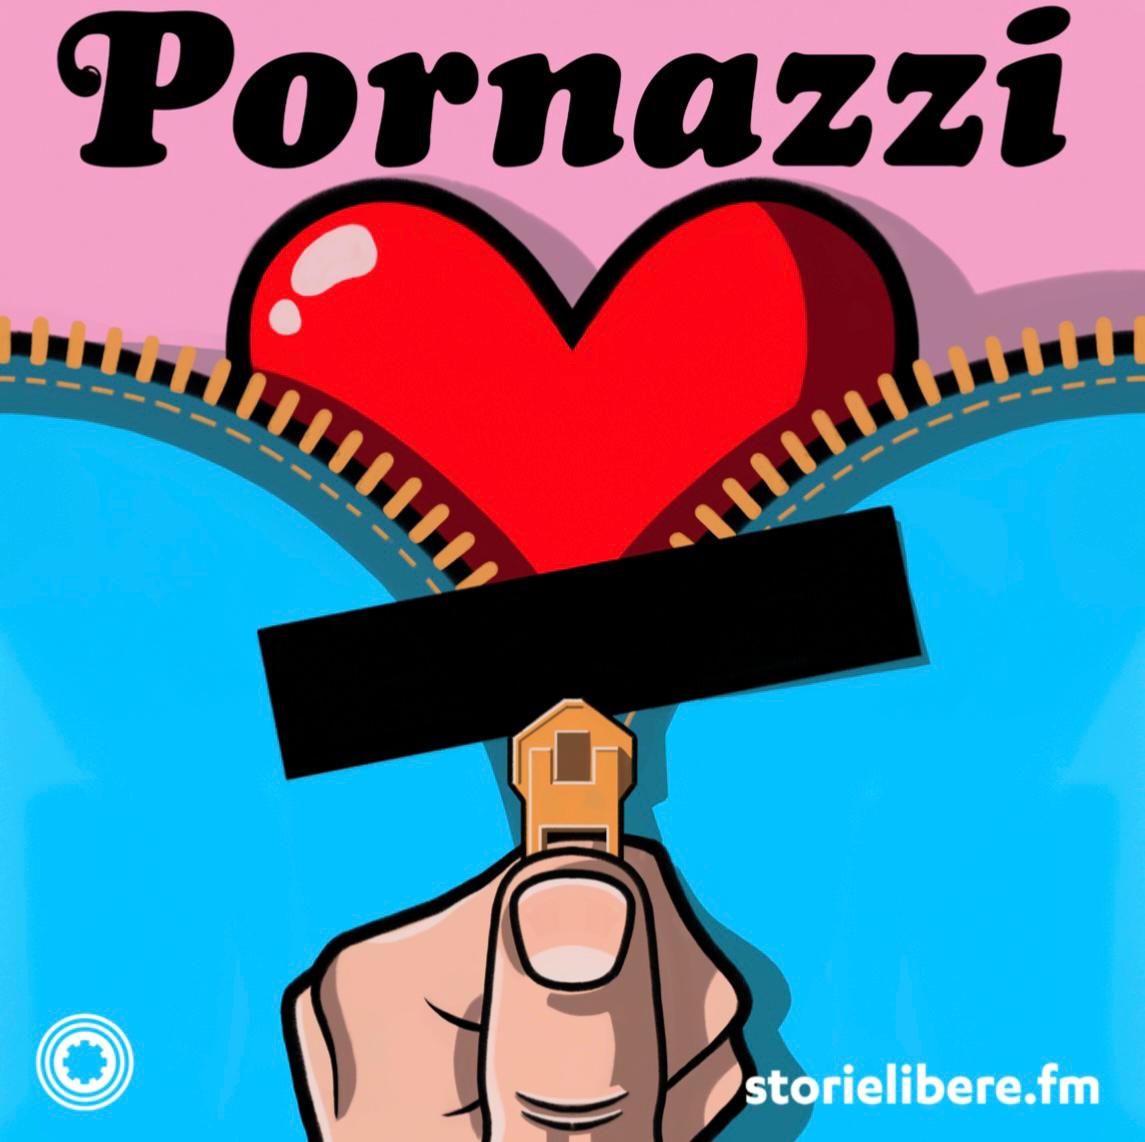 Pornazzi, la nuova serie podcast di Melissa Panarello 